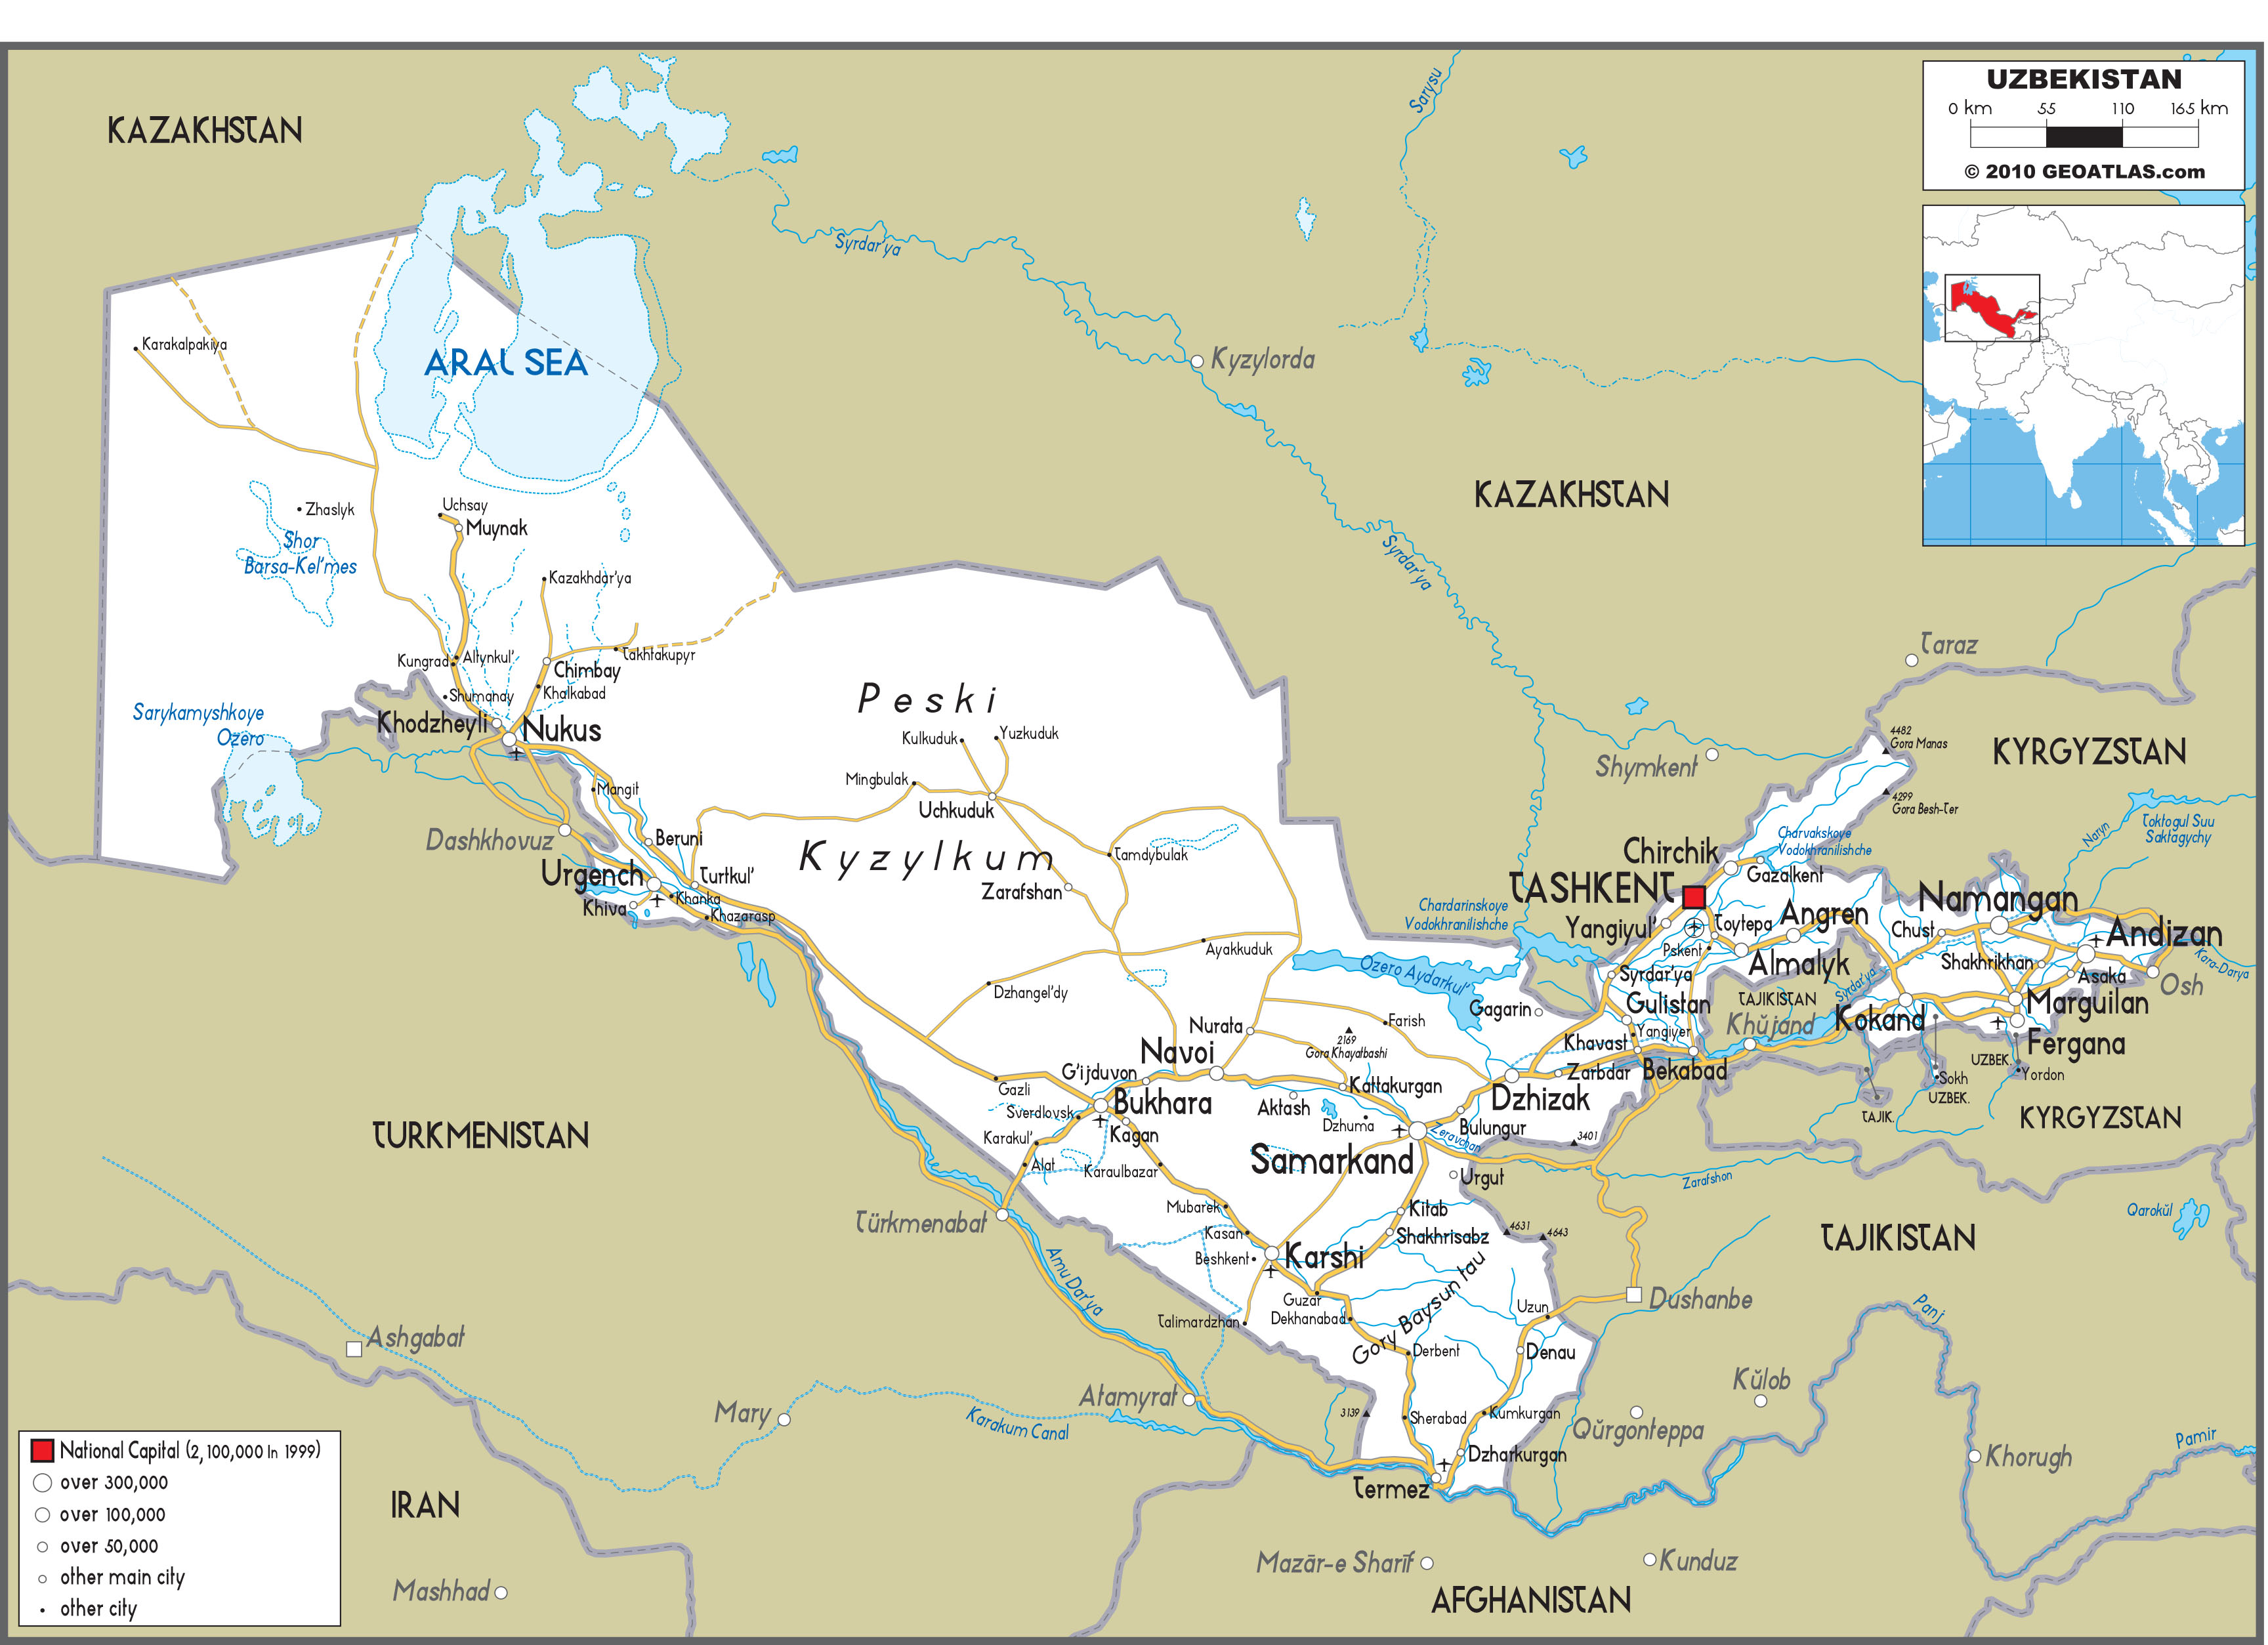 uzbekistan travel plan